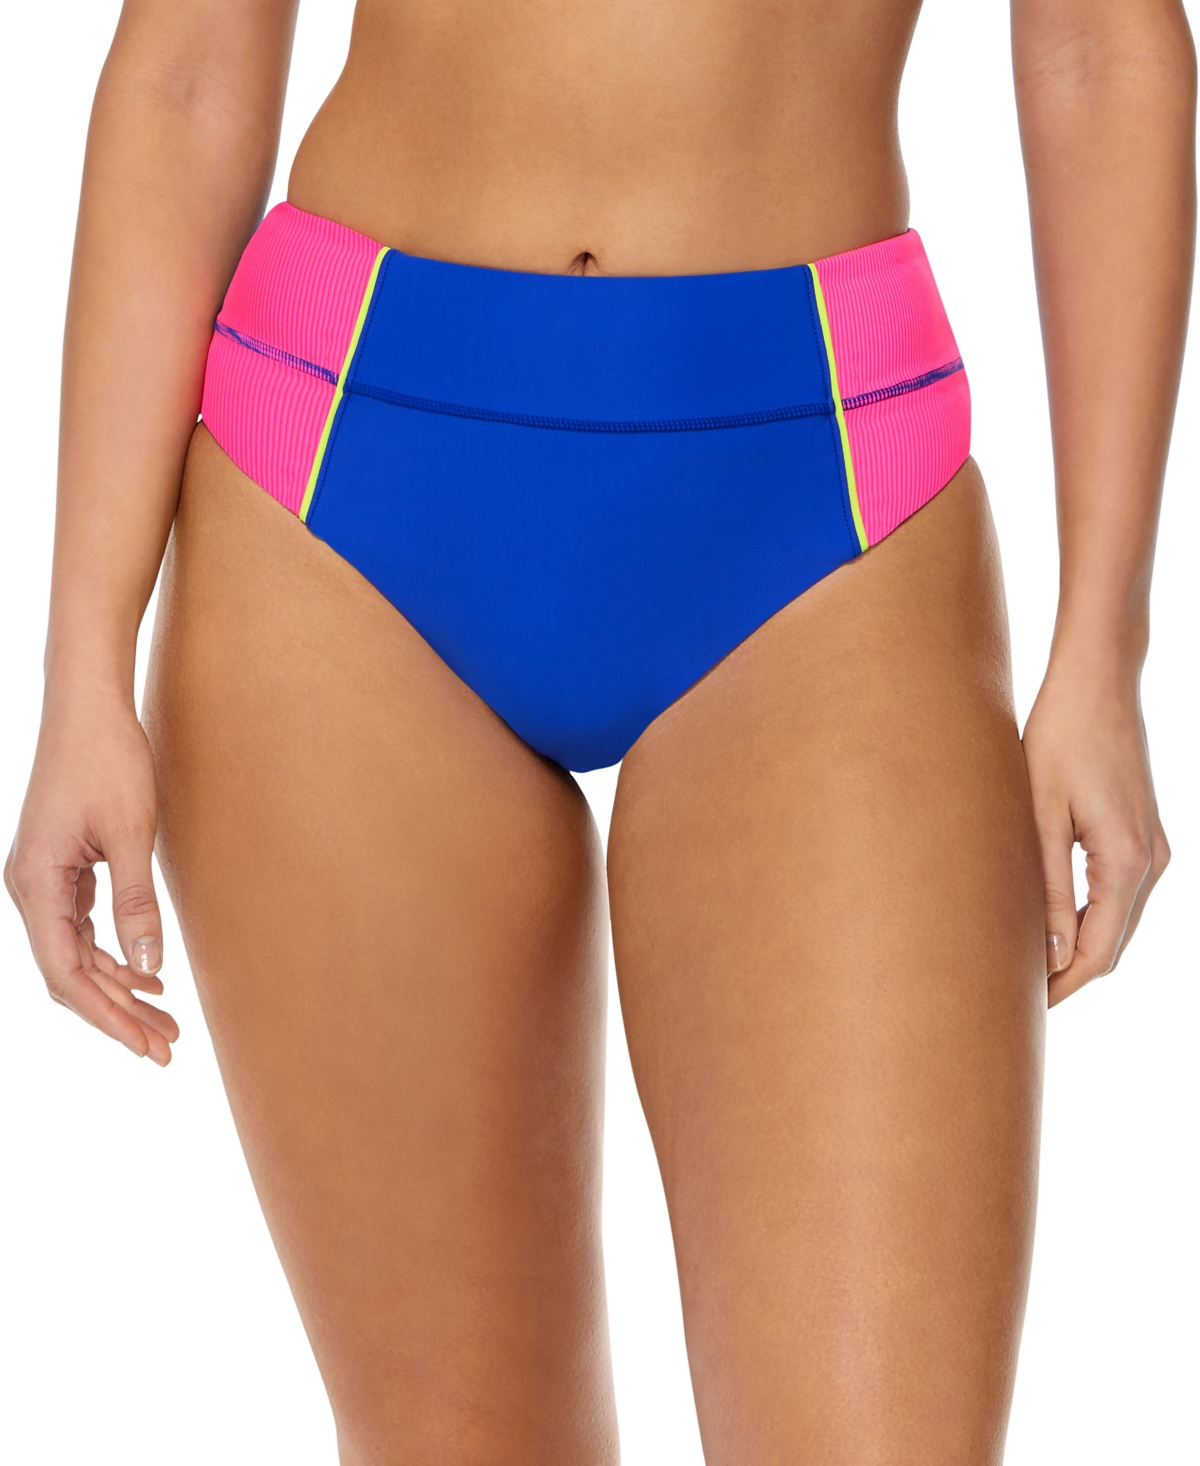 Women's Colorblock High-Waist Bikini Bottoms - Blue/Pink